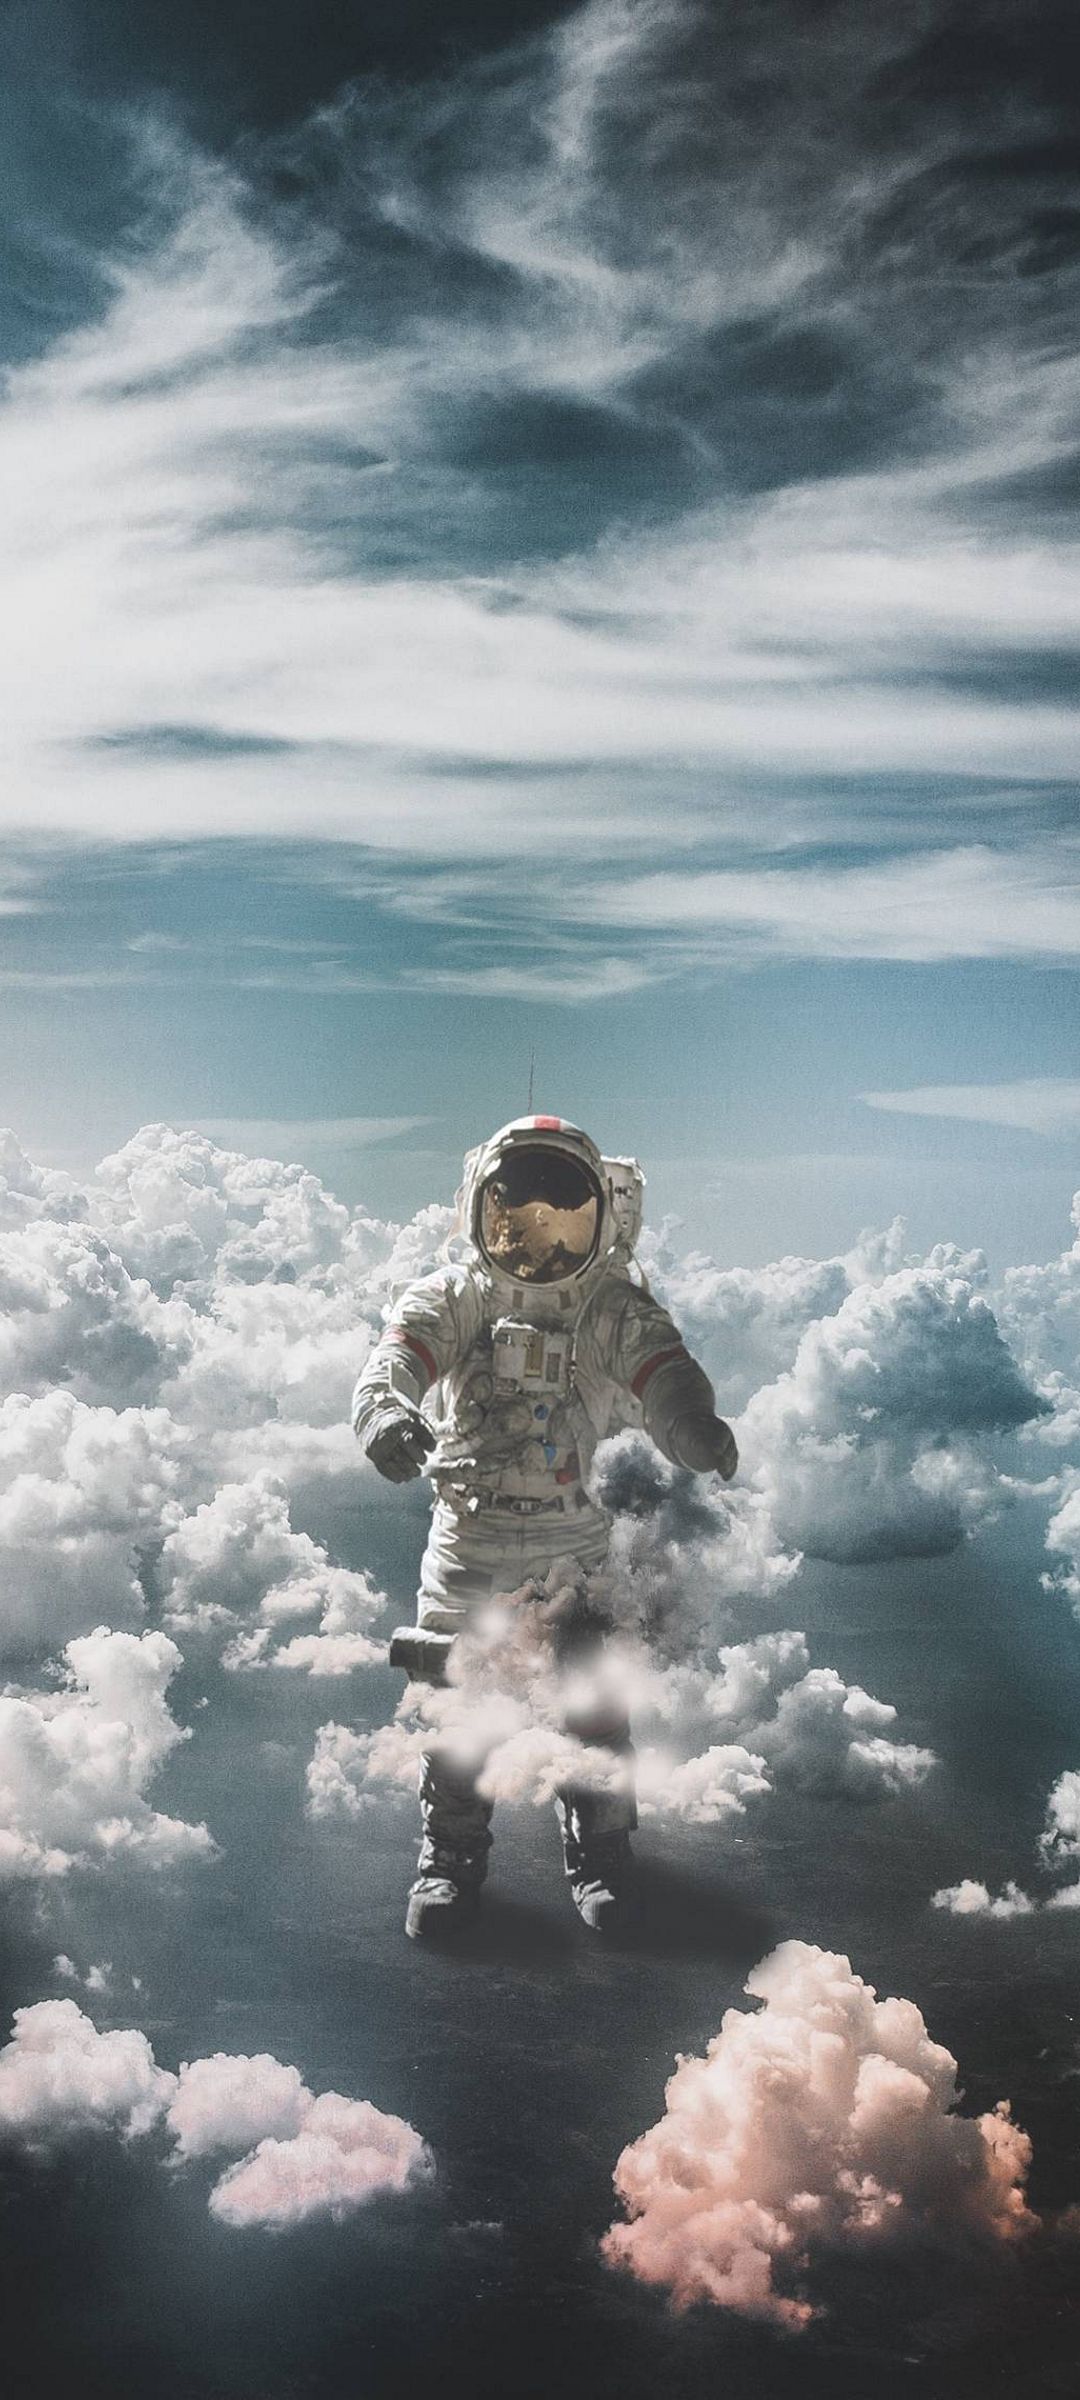 dead space 1 astronaut suit model download